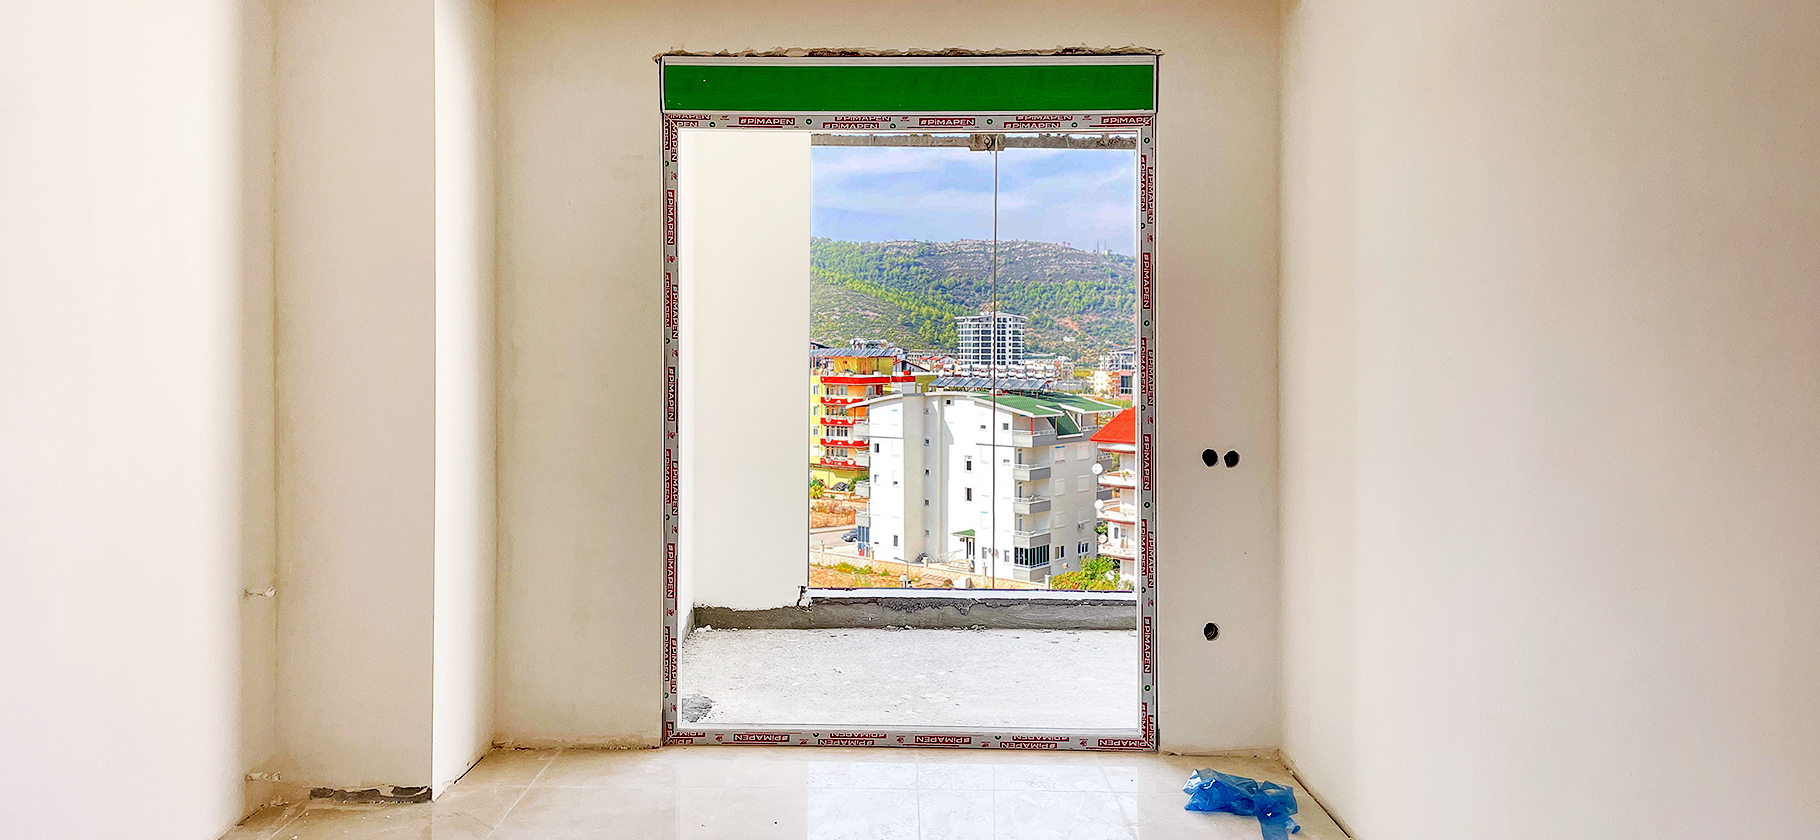 Как я продал по переуступке недостроенную квартиру в Турции